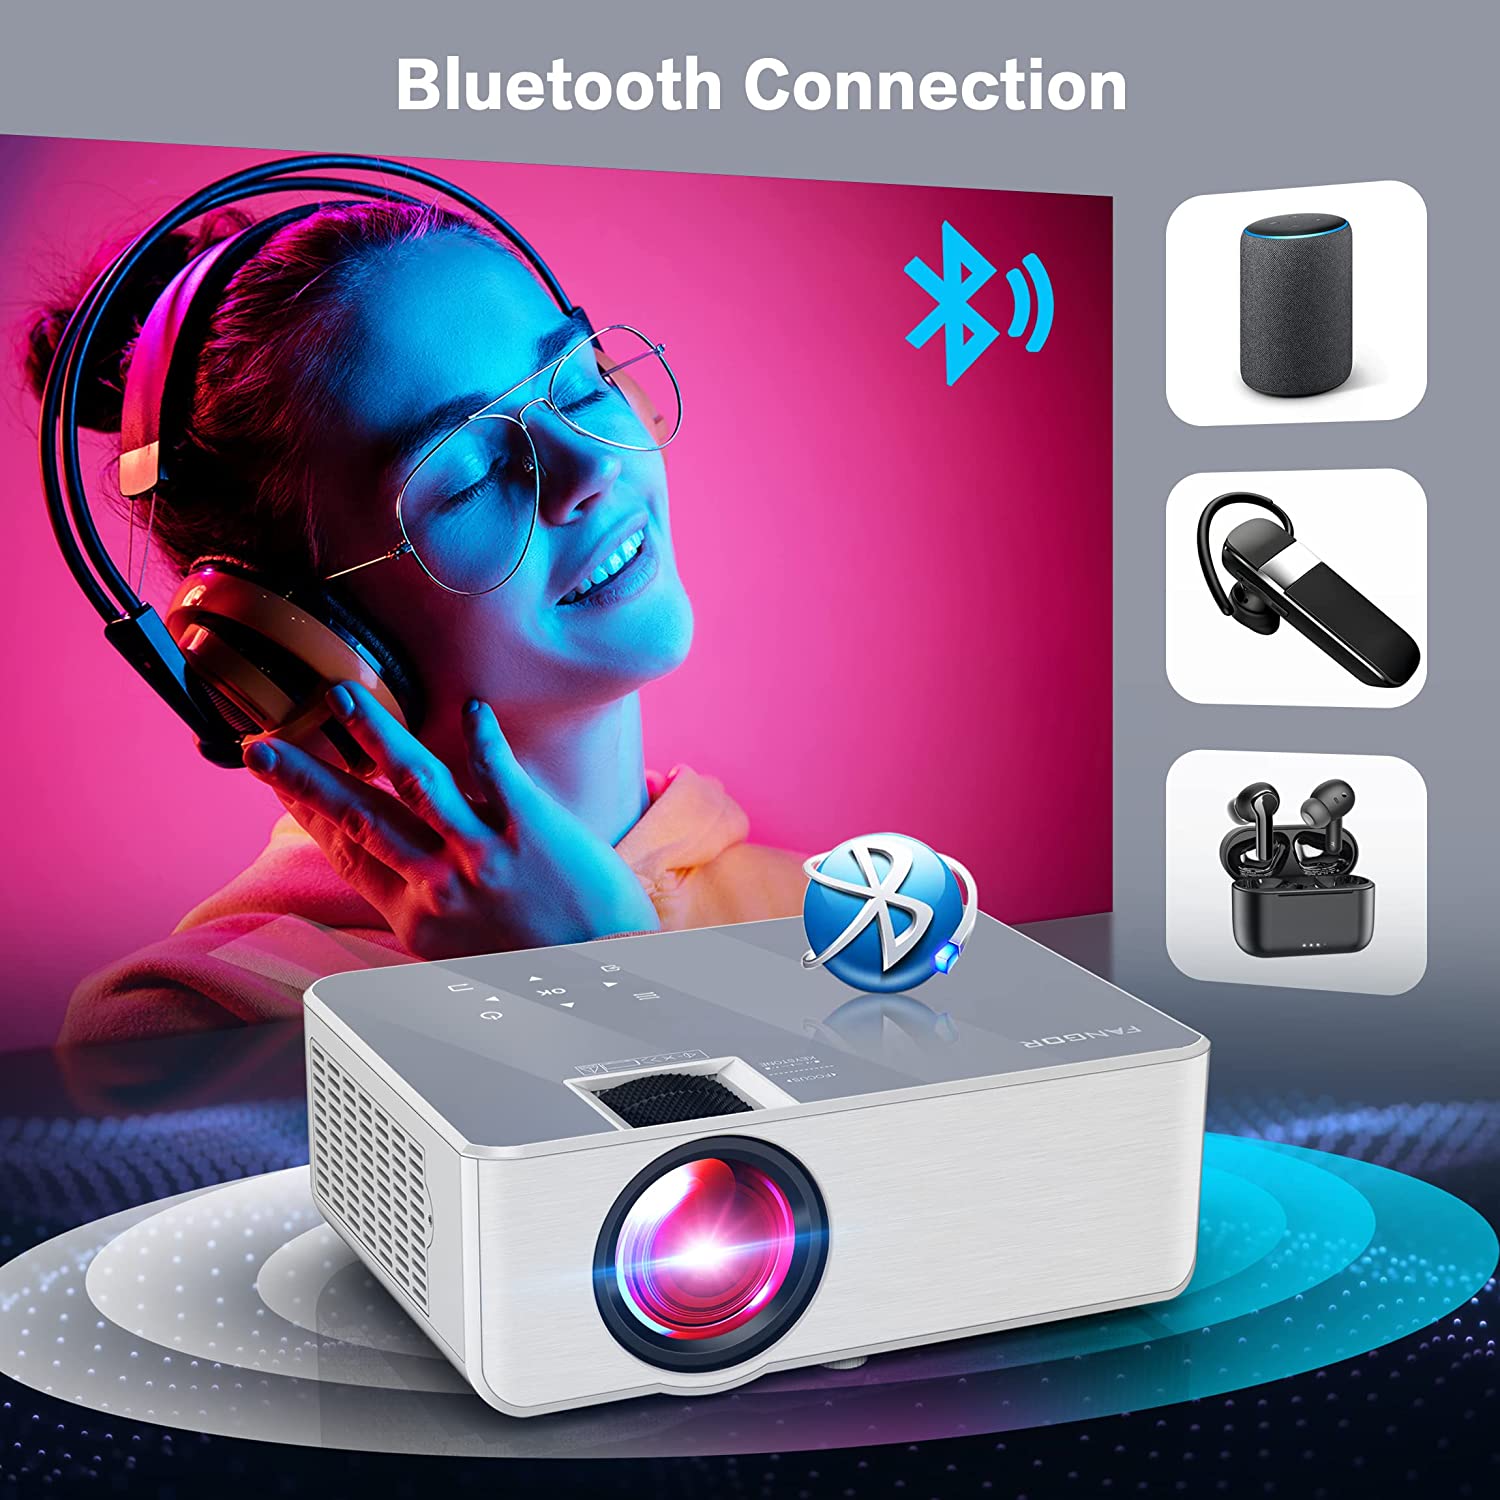  Proyector WiFi Bluetooth, mini proyector W2 compatible con  pantalla Full HD de 1080p y 250 pulgadas, proyector portátil con función de  zoom del 50%, proyector de cine en casa compatible con